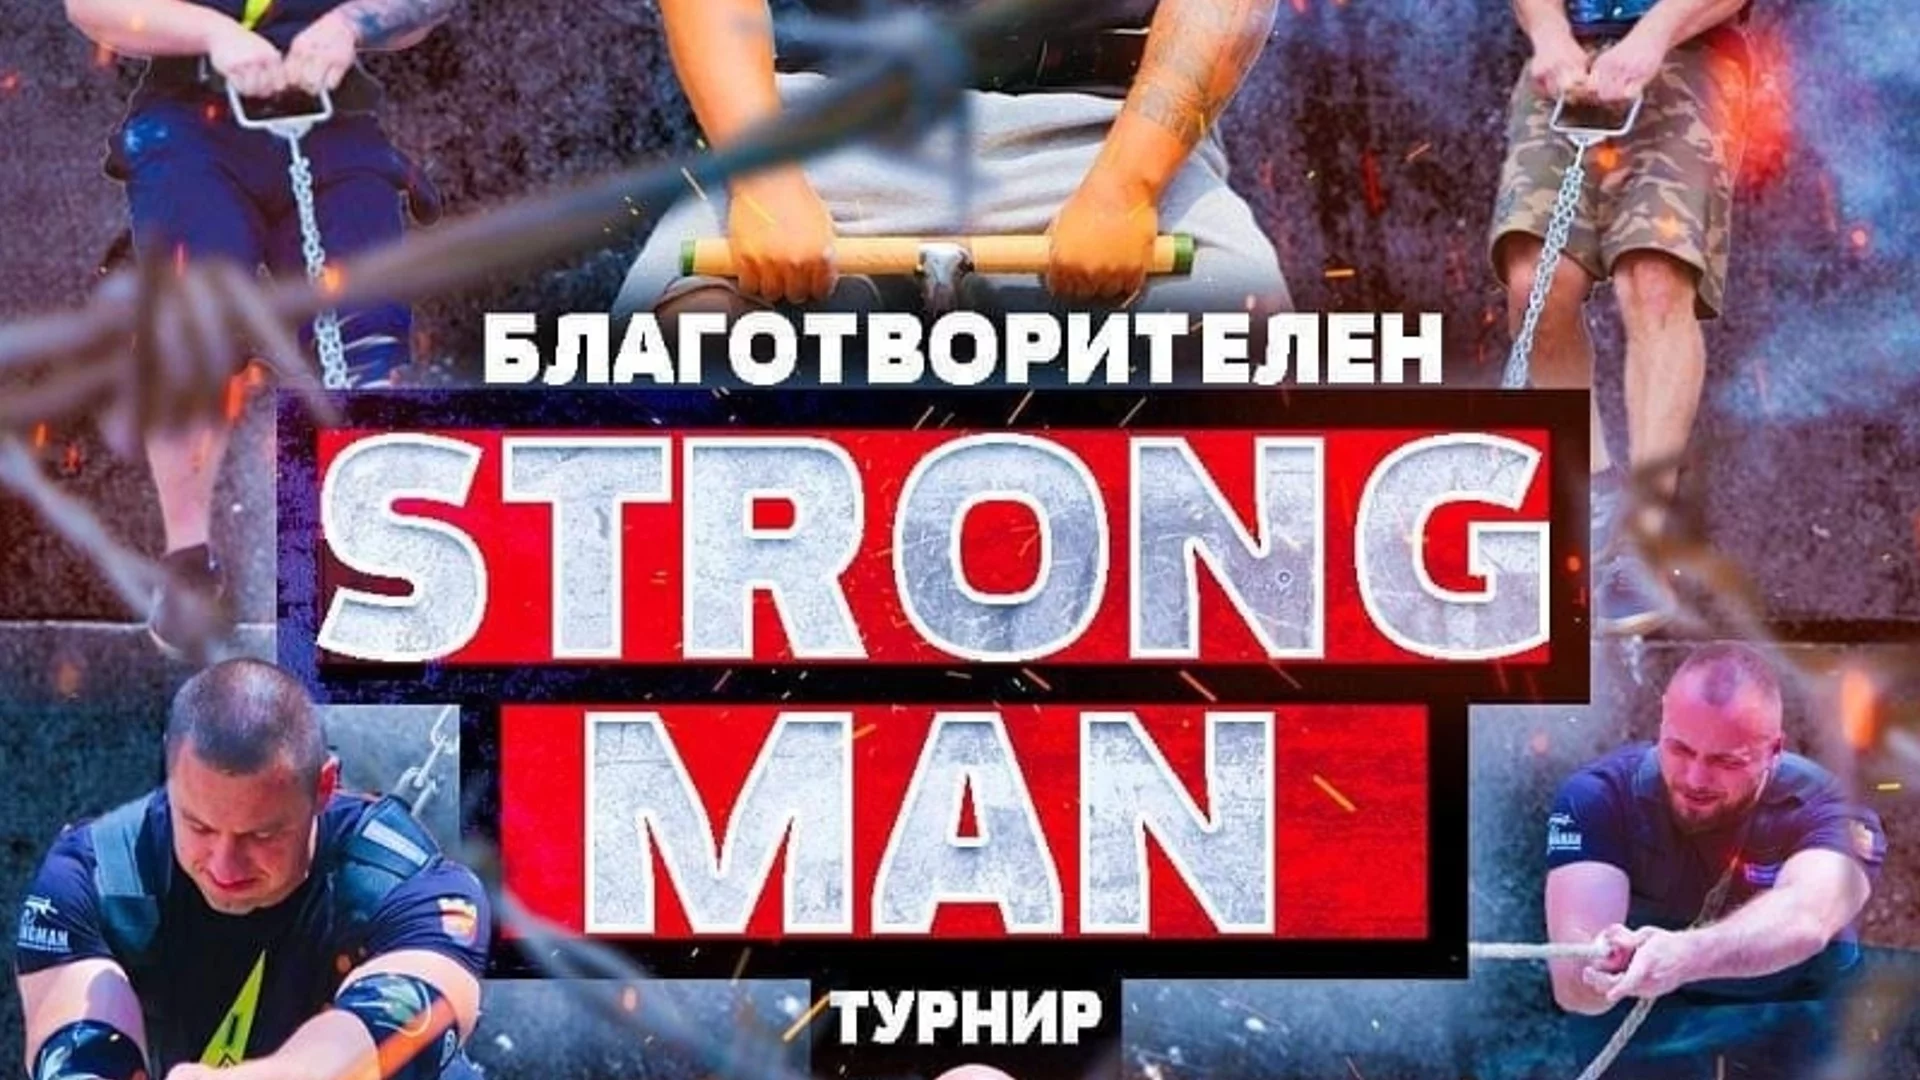 Най-тежкият "Стронг мен" турнир ще се проведе в Пазарджик